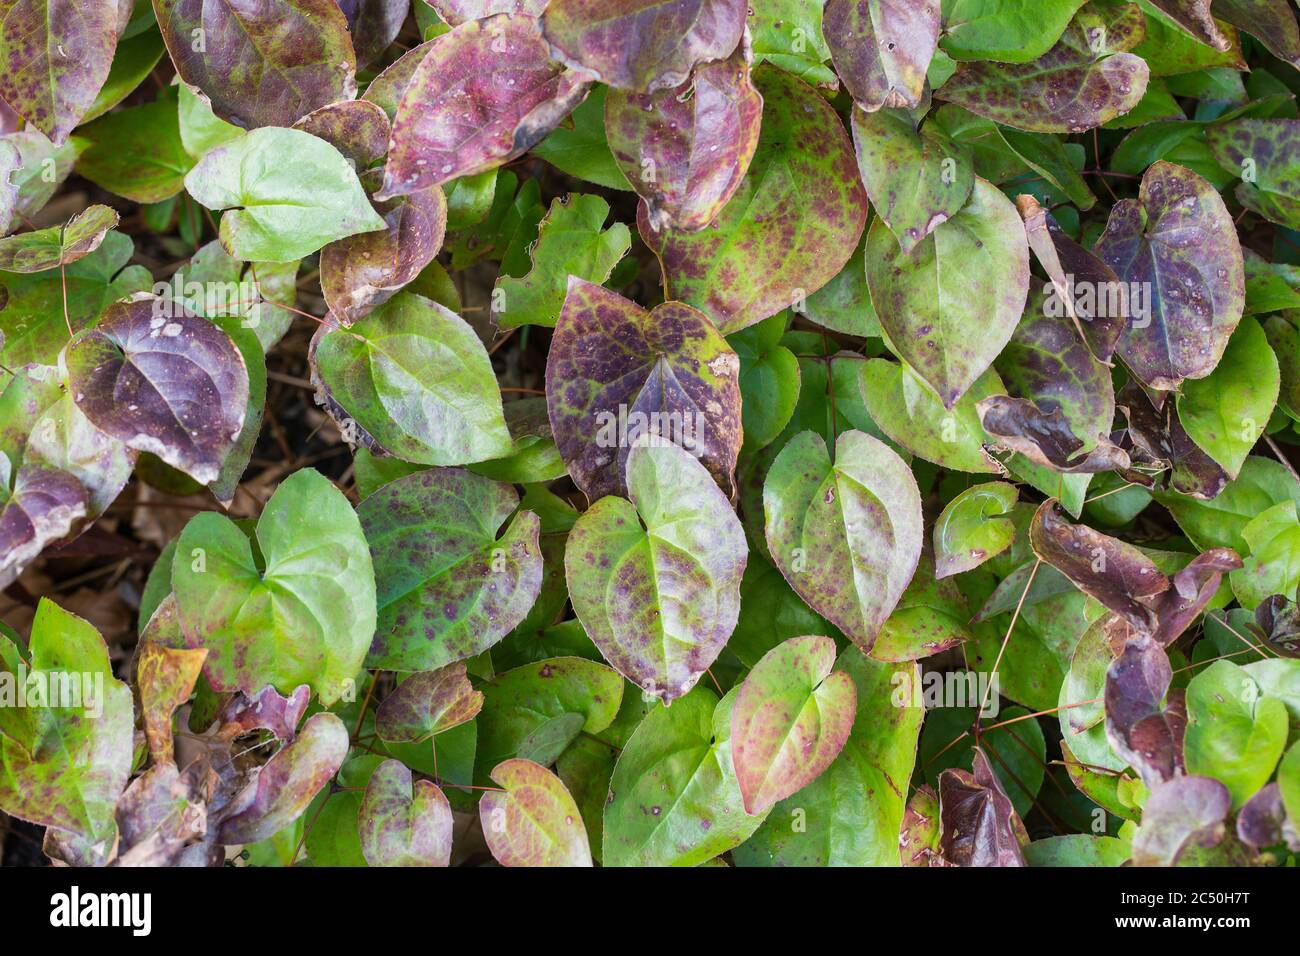 Alpine barrenwort (Epimedium alpinum), leaves Stock Photo